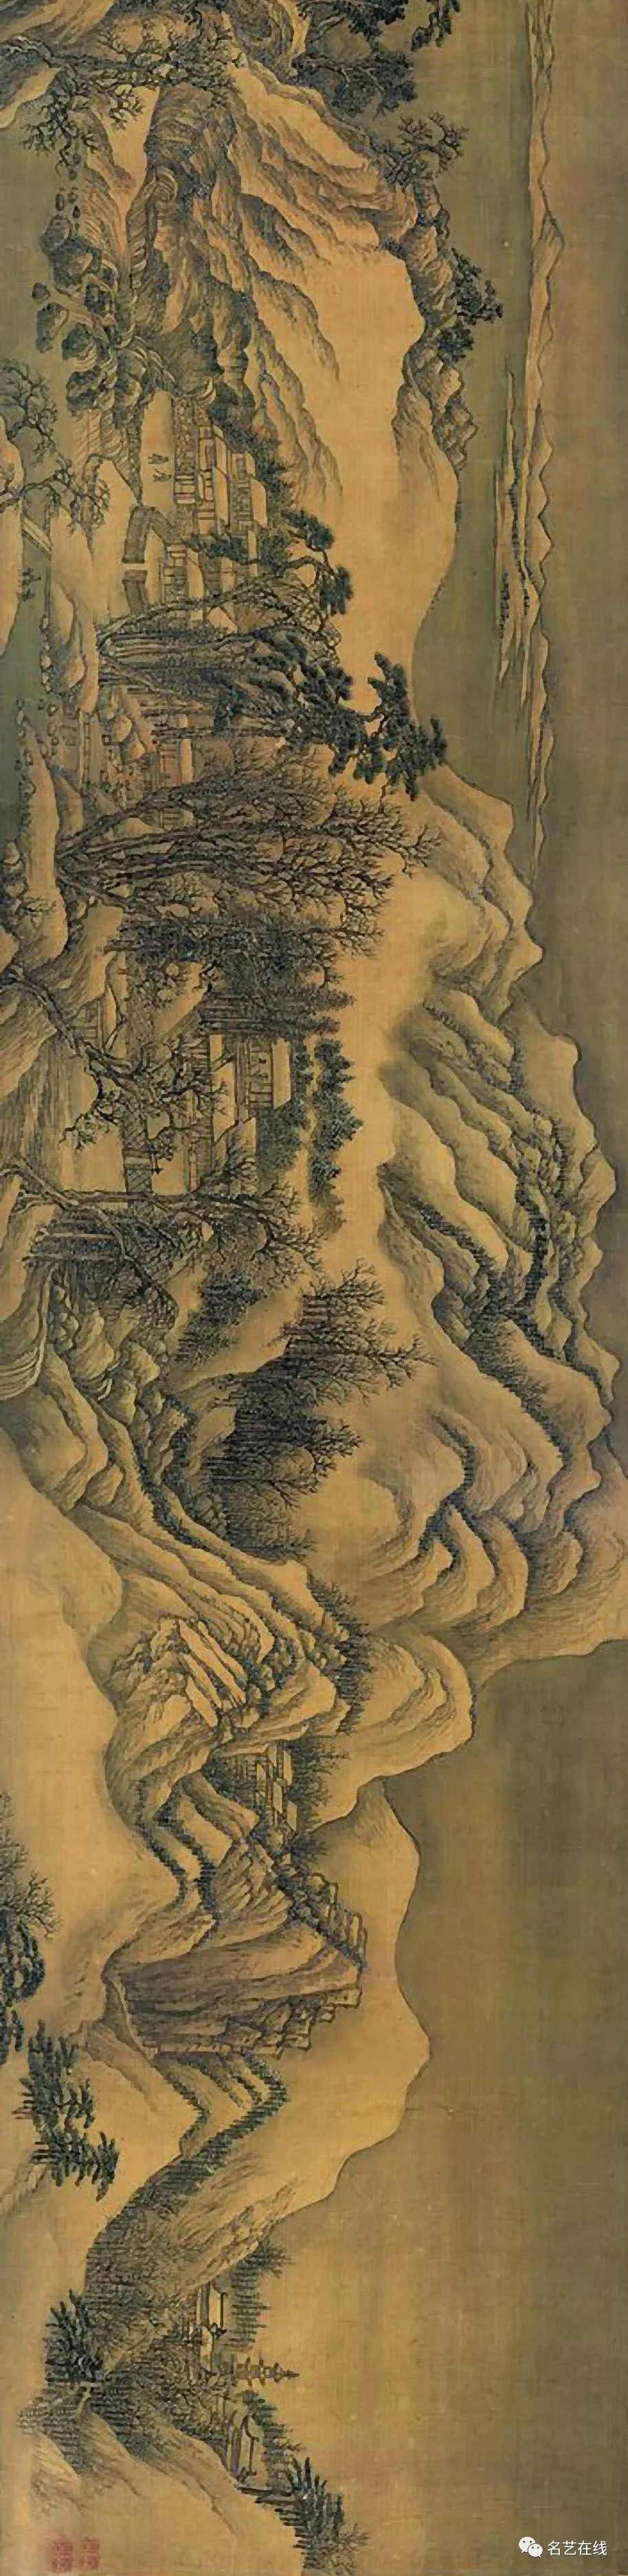 14清 王翚《仿摩诘江山雪霁图》15清 王翚《溪山霁雪图卷》南京博物院